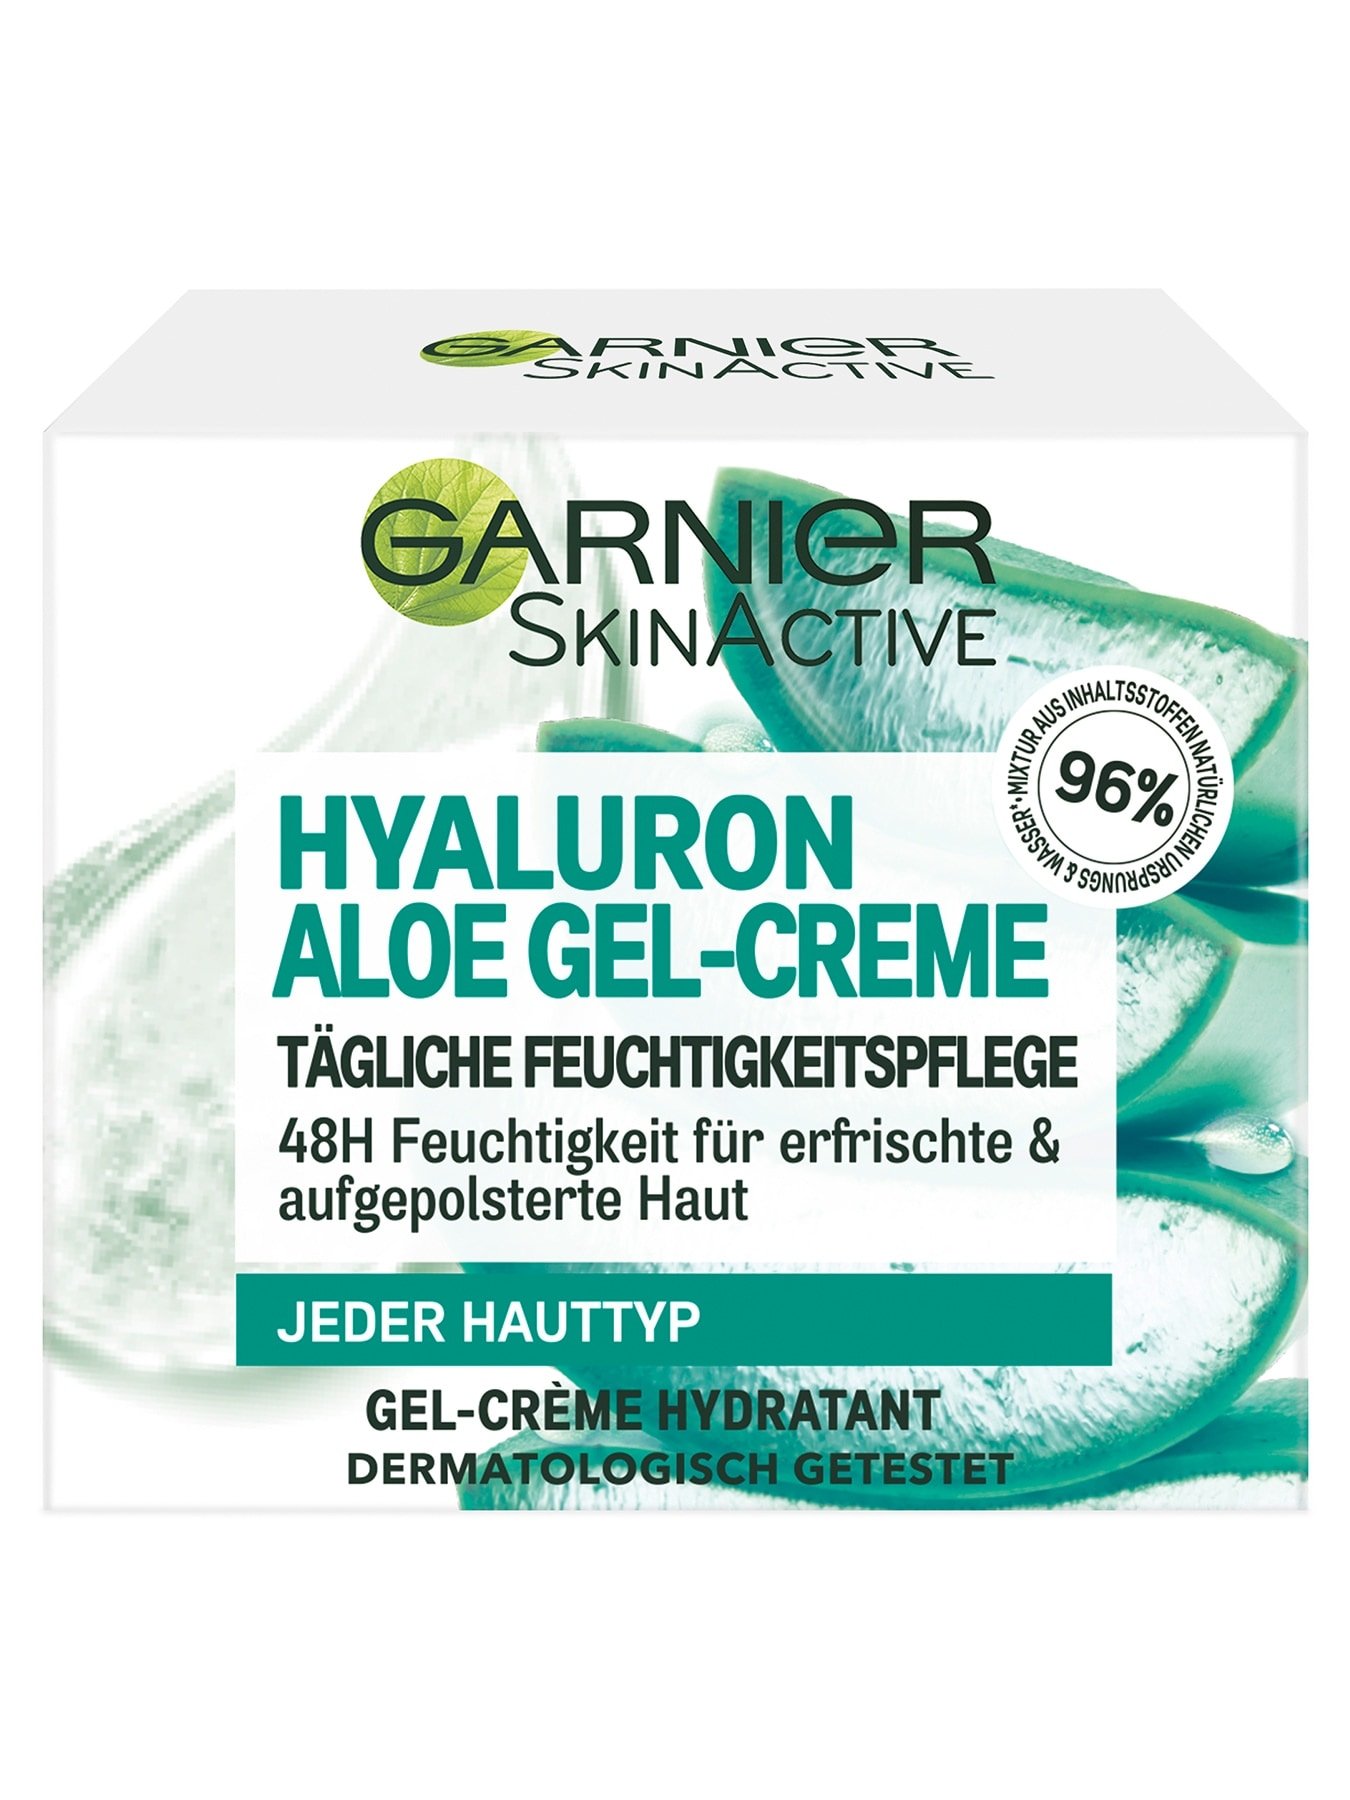 Hyaluron Aloe Gel-Creme Produktabbildung